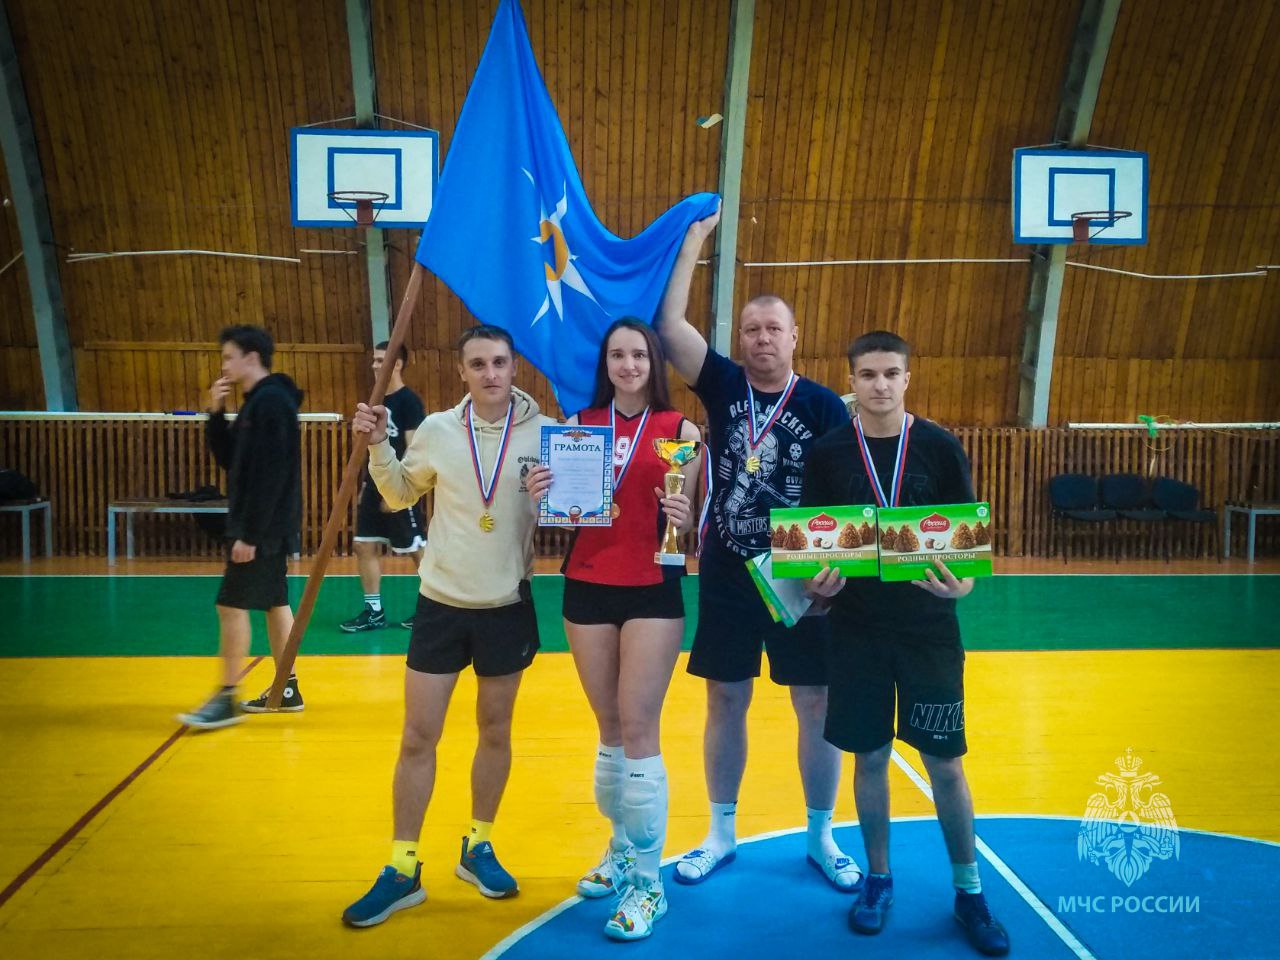 Нерюнгринские пожарные стали чемпионами турнира по пляжному волейболу